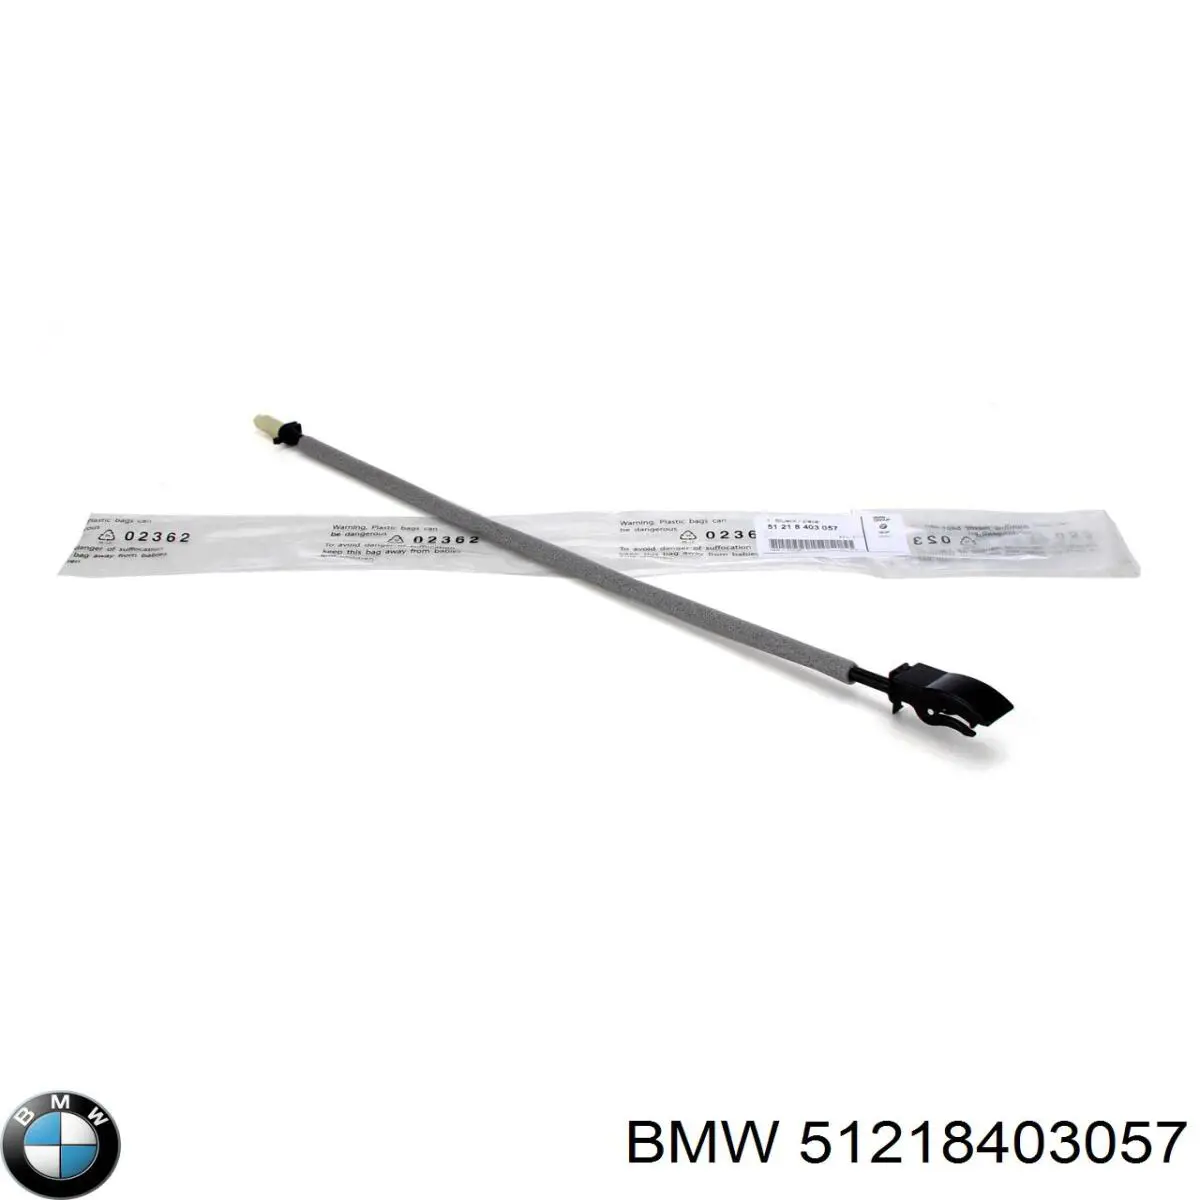 Cable de accionamiento, desbloqueo de puerta delantera para BMW X5 (E53)